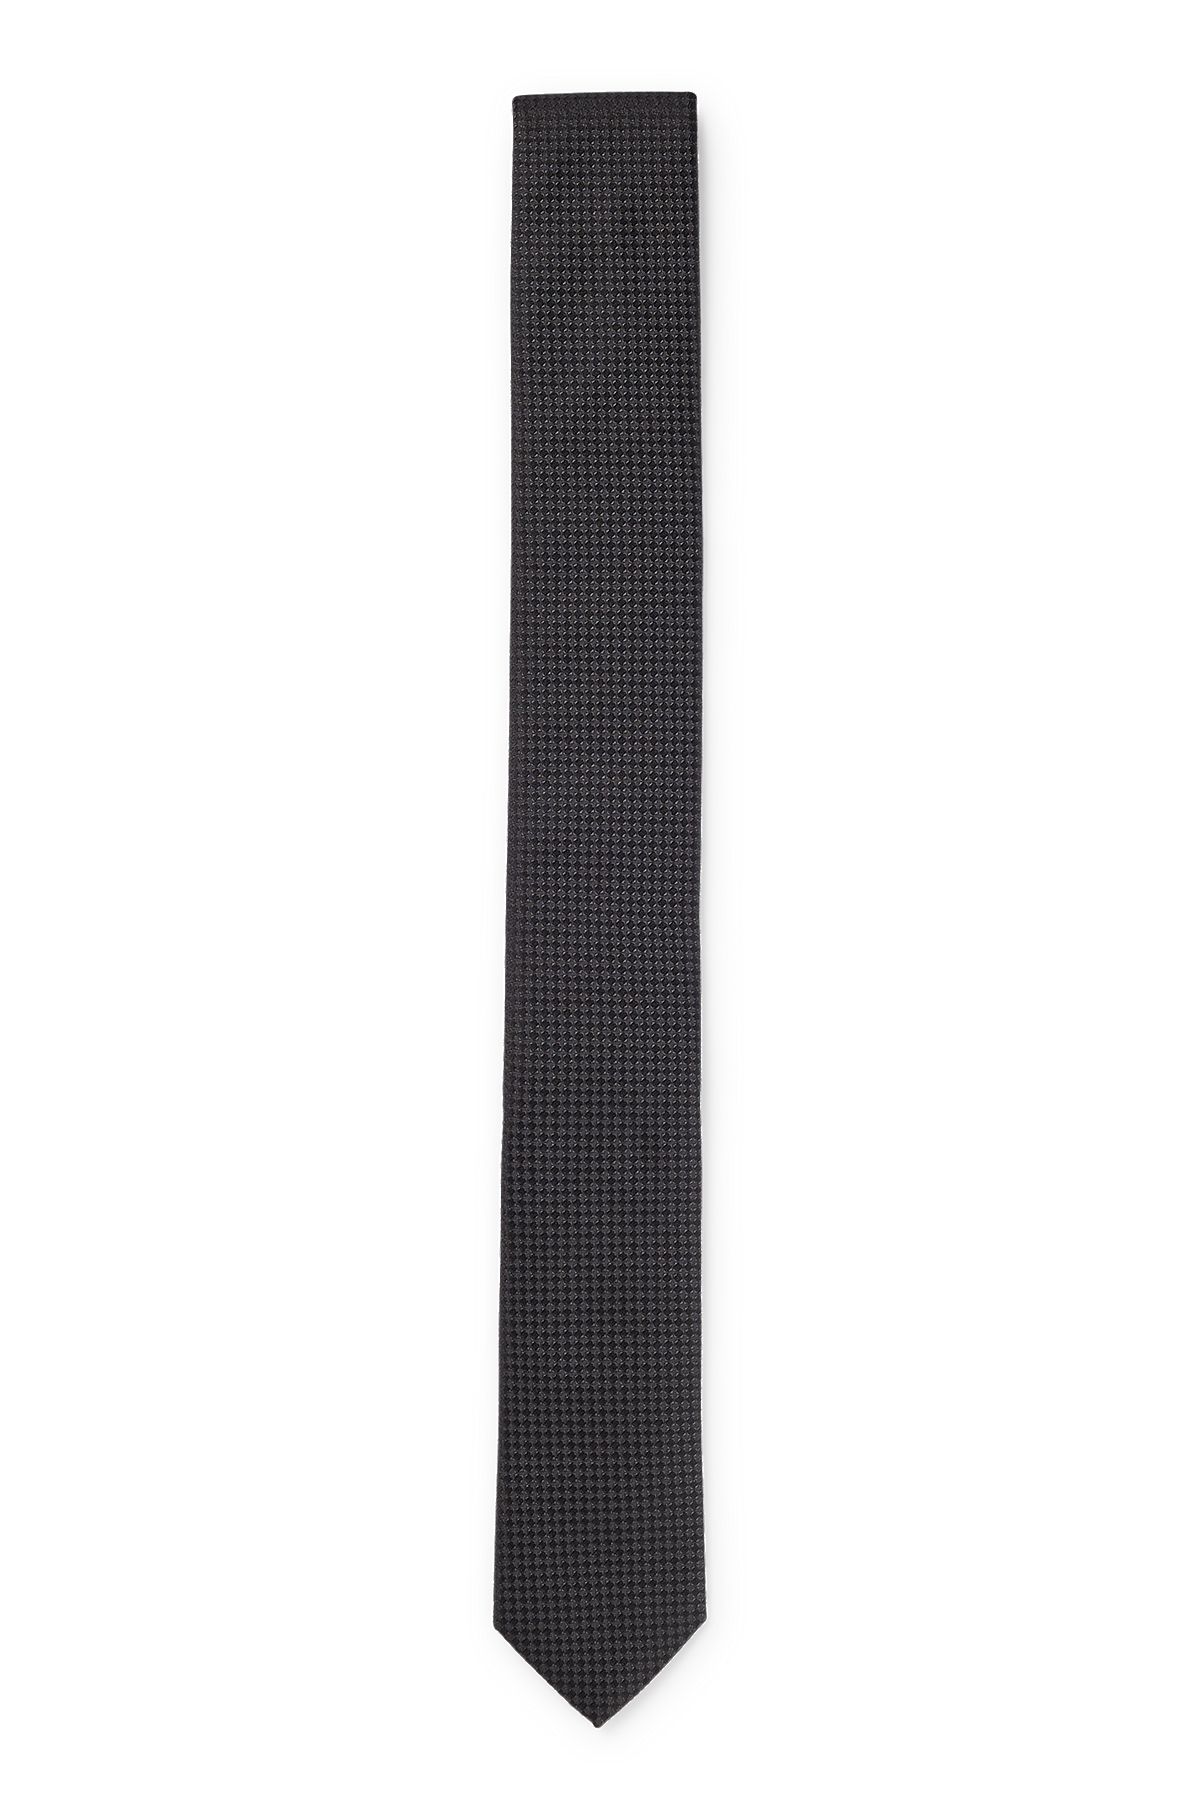 Cravate en jacquard de soie à micro motif, Noir